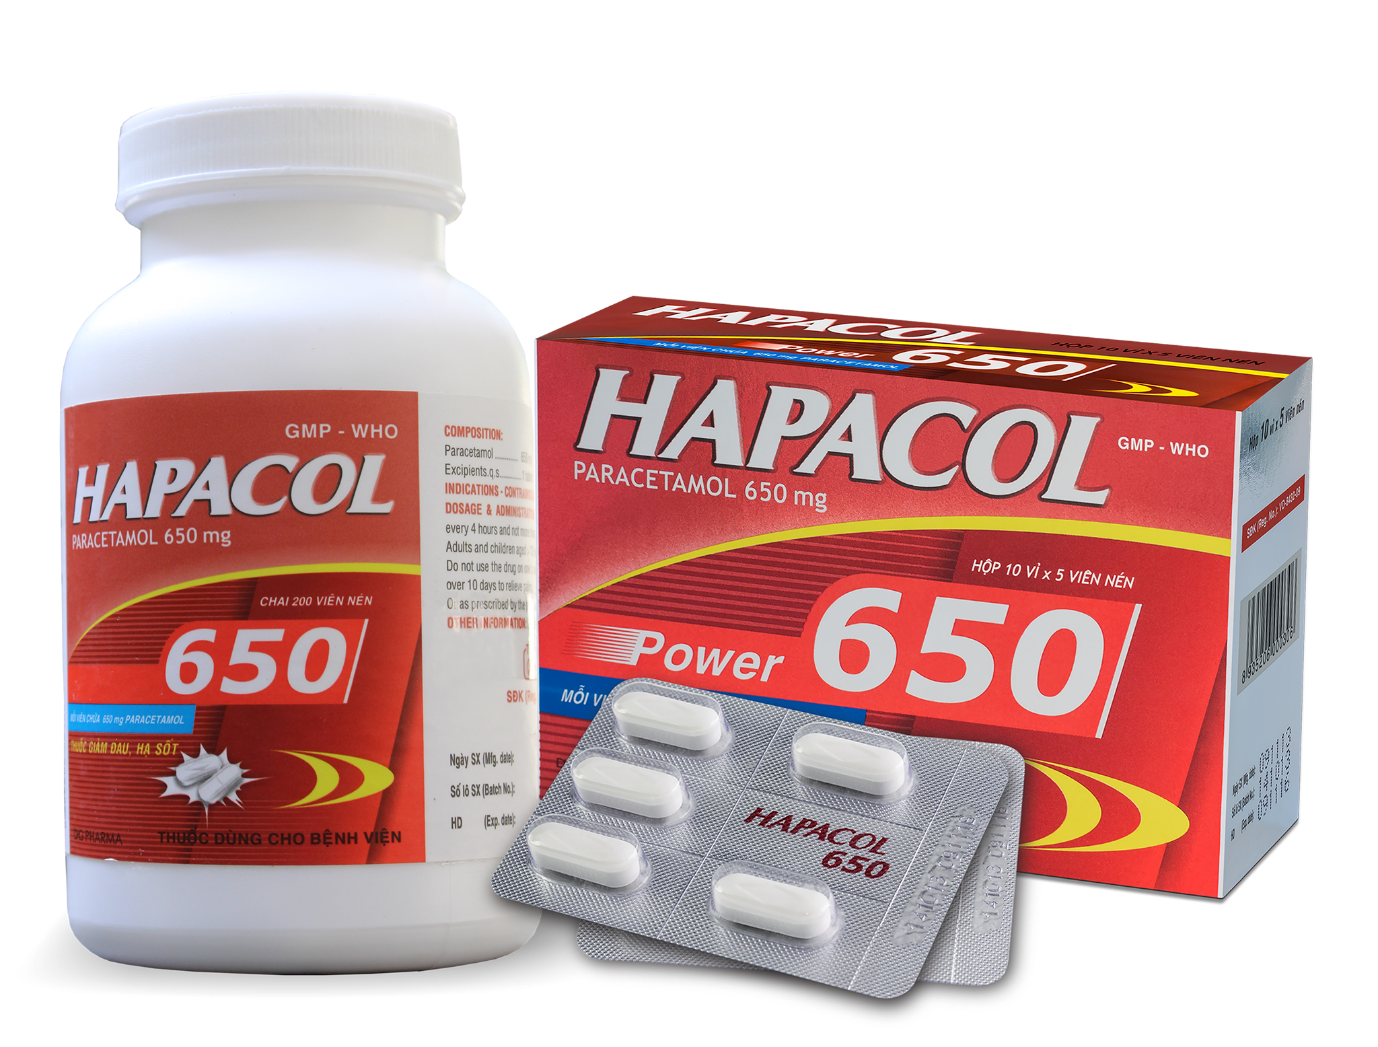 Hiện 16 sản phẩm dành riêng cho người lớn, như Hapacol 650 mg Paracetamol được sản xuất hoàn toàn trên dây chuyền đạt tiêu chuẩn JAPAN-GMP